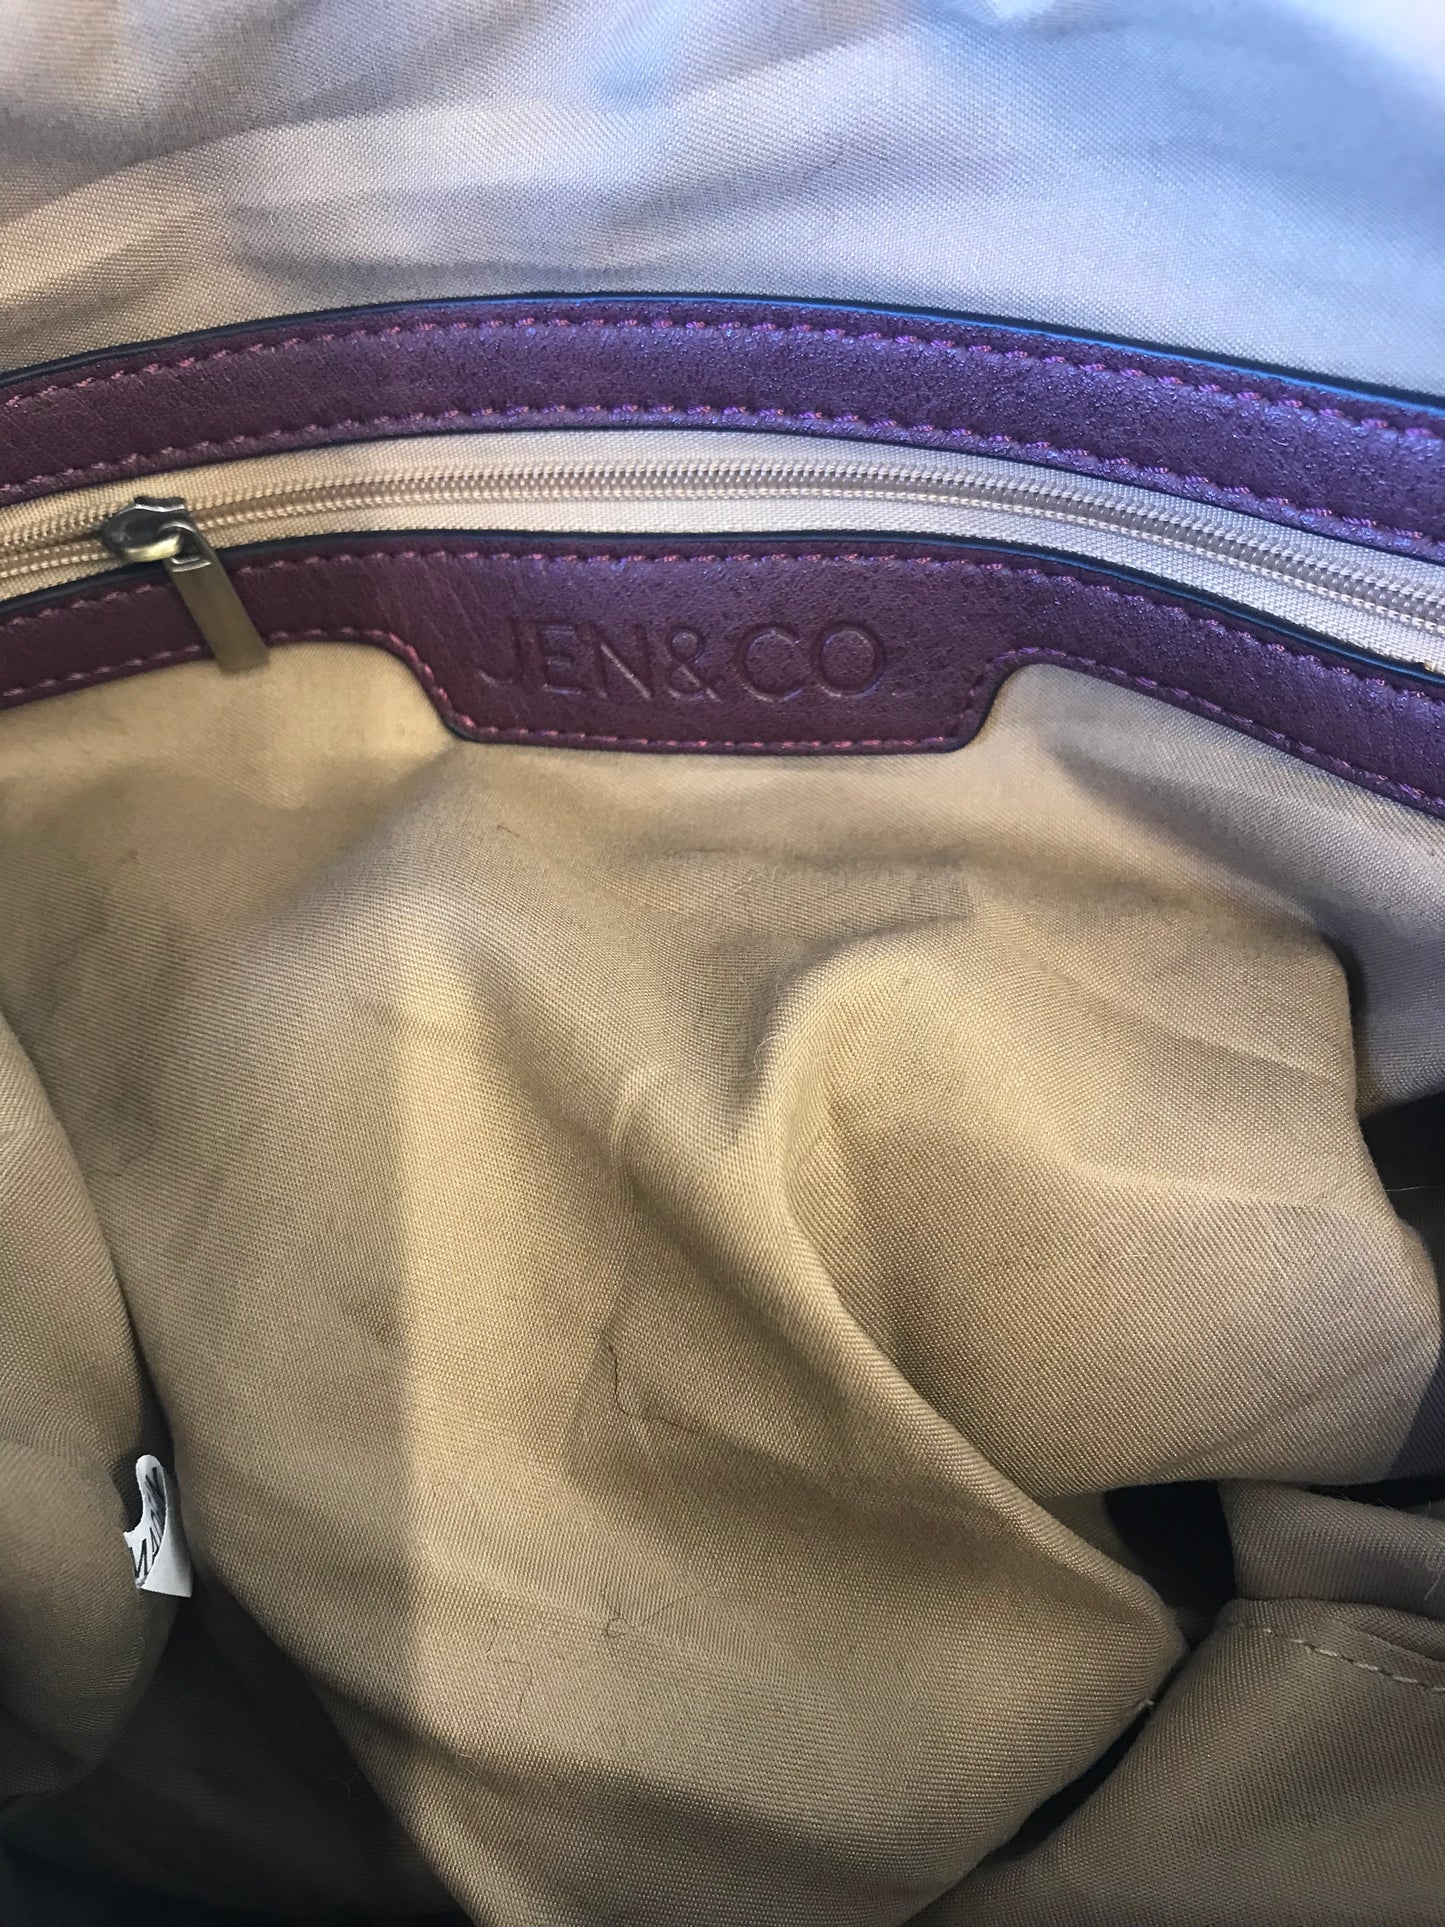 Handbag By Jen & Co Size: Large